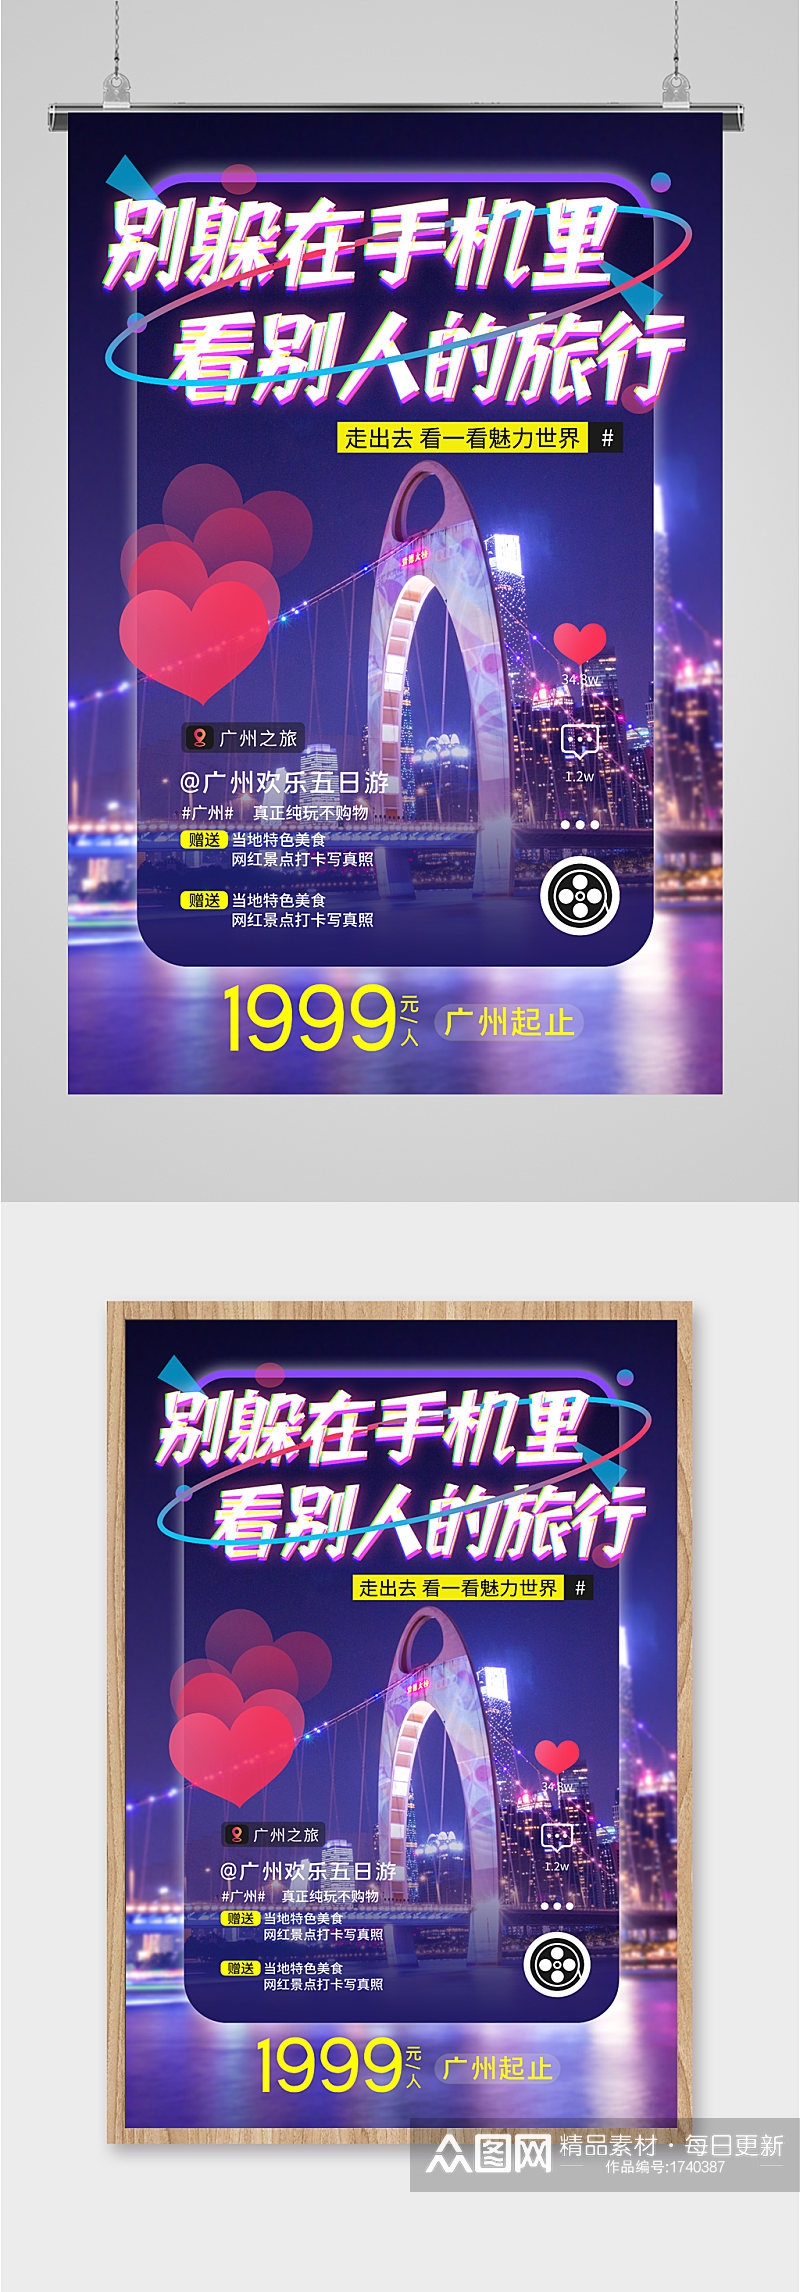 广州欢乐旅游海报素材